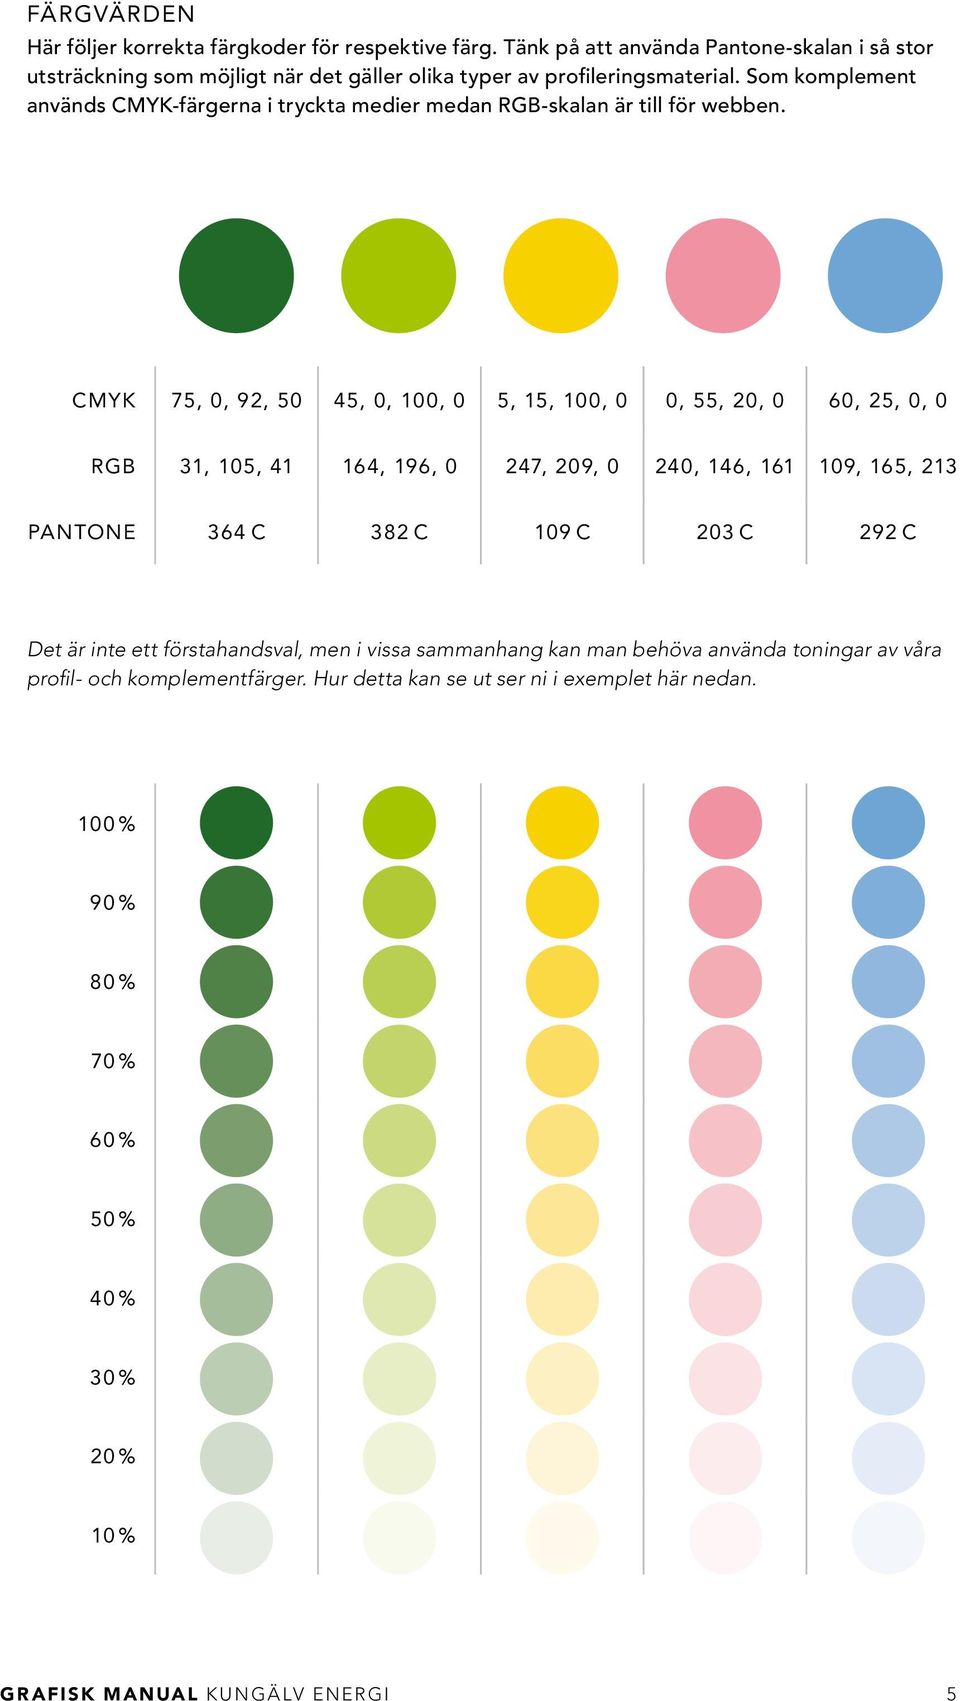 Som komplement används CMYK-färgerna i tryckta medier medan RGB-skalan är till för webben.